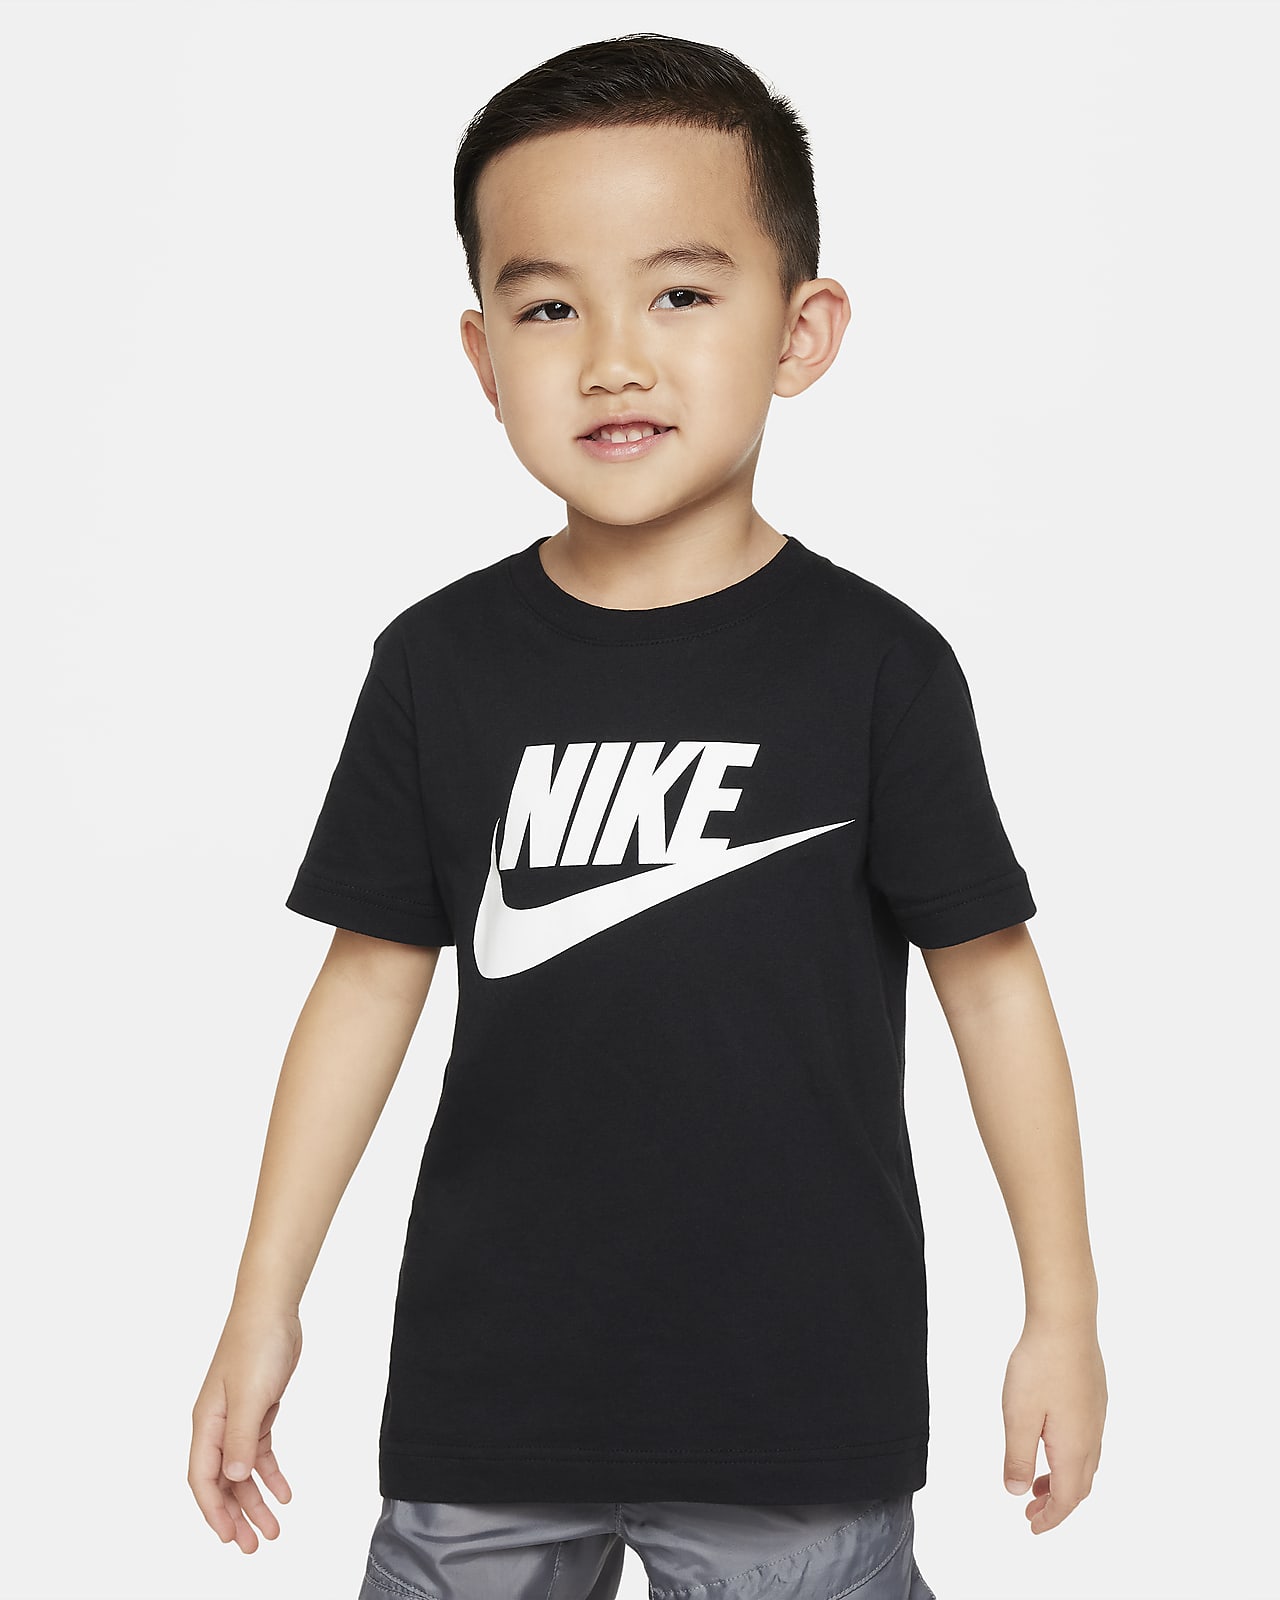 Nike Futura Tee T-Shirt für jüngere Kinder